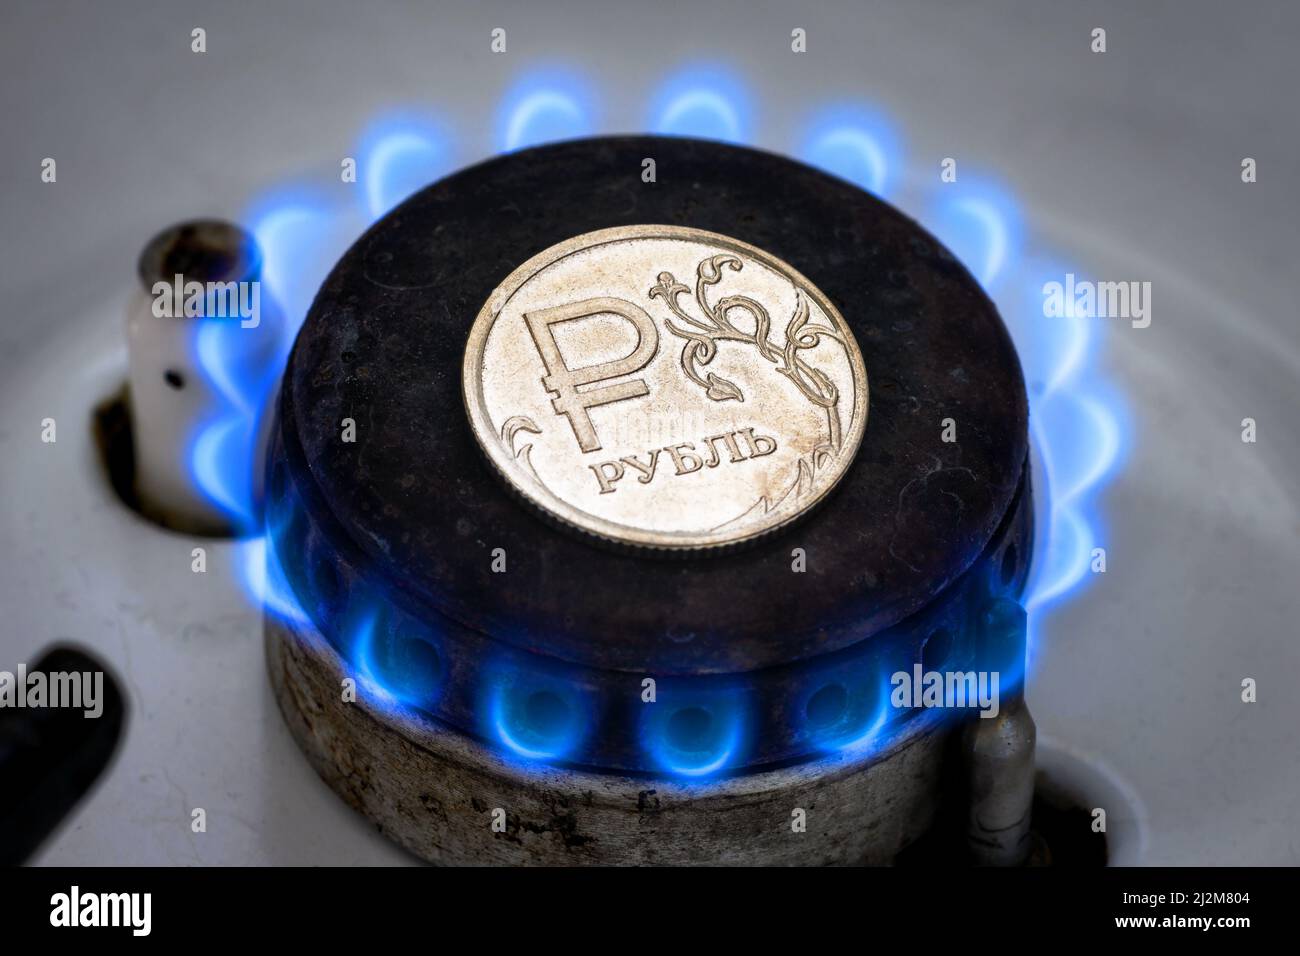 Brûleur à gaz et pièce de rouble, argent russe sur cuisinière à gaz à la maison. Flamme de propane naturel et monnaie rouble. Concept de l'économie de la Russie et de l'Europe, Gas co Banque D'Images